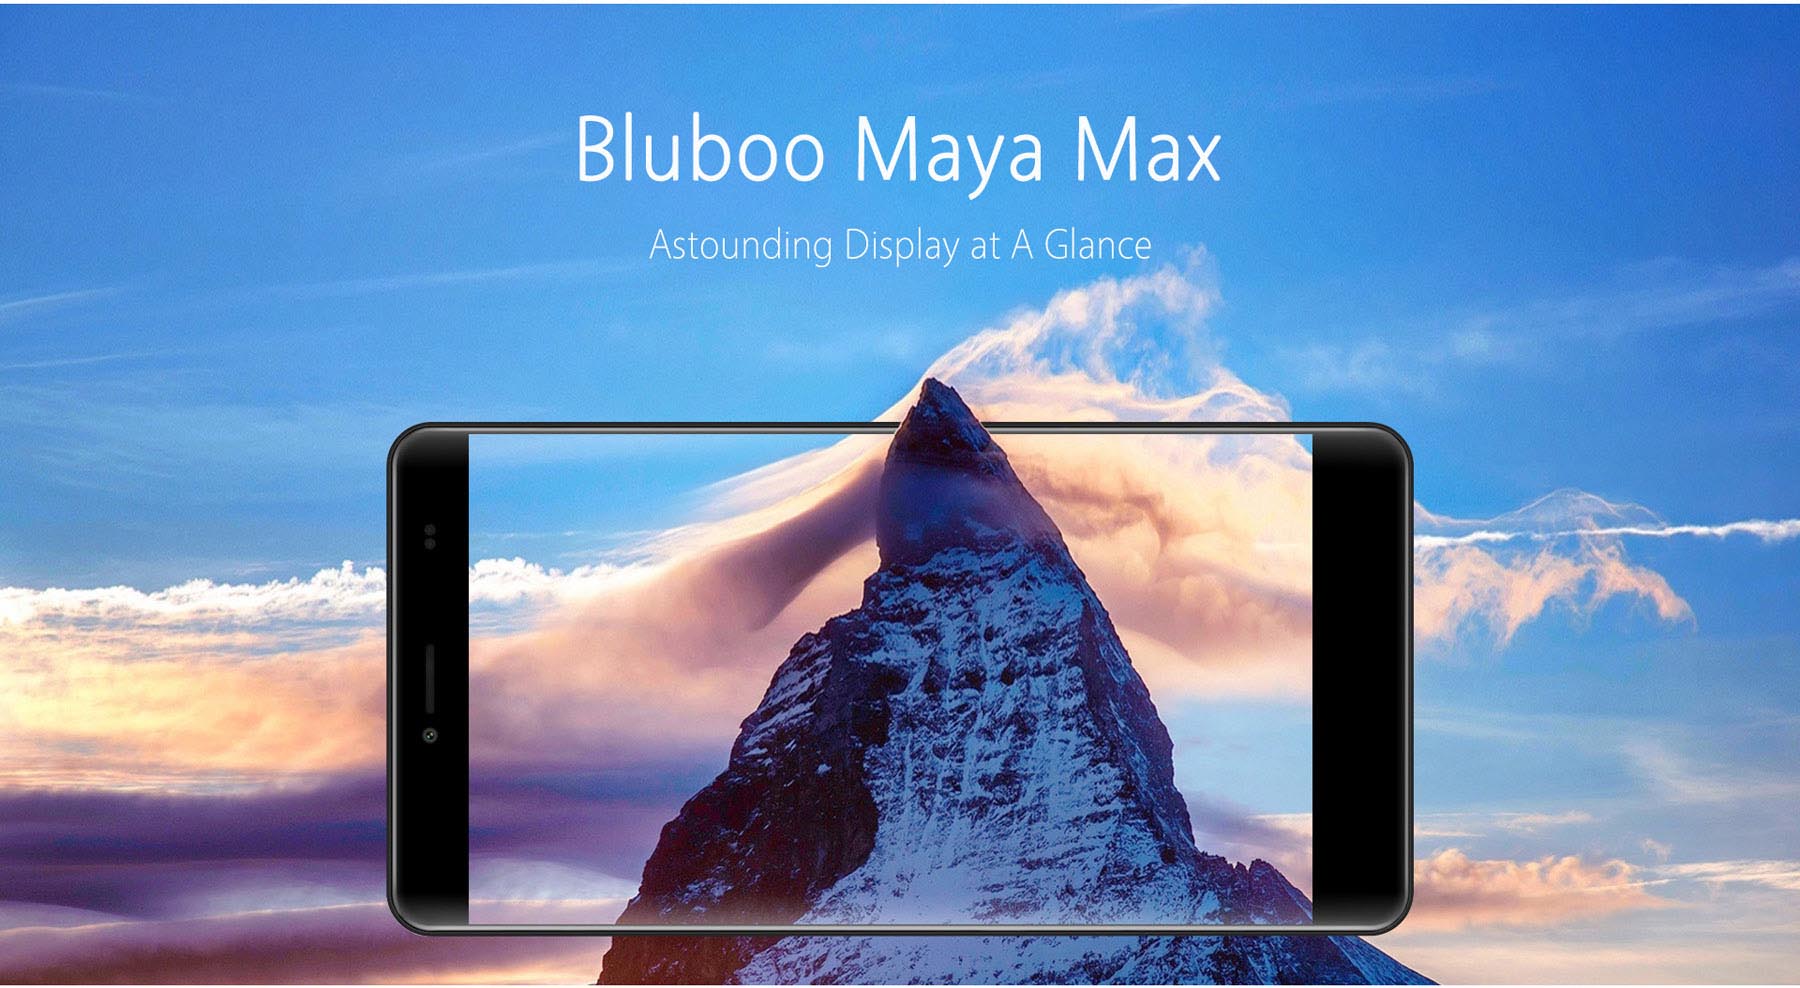 bluboo maya max 1471337704891739